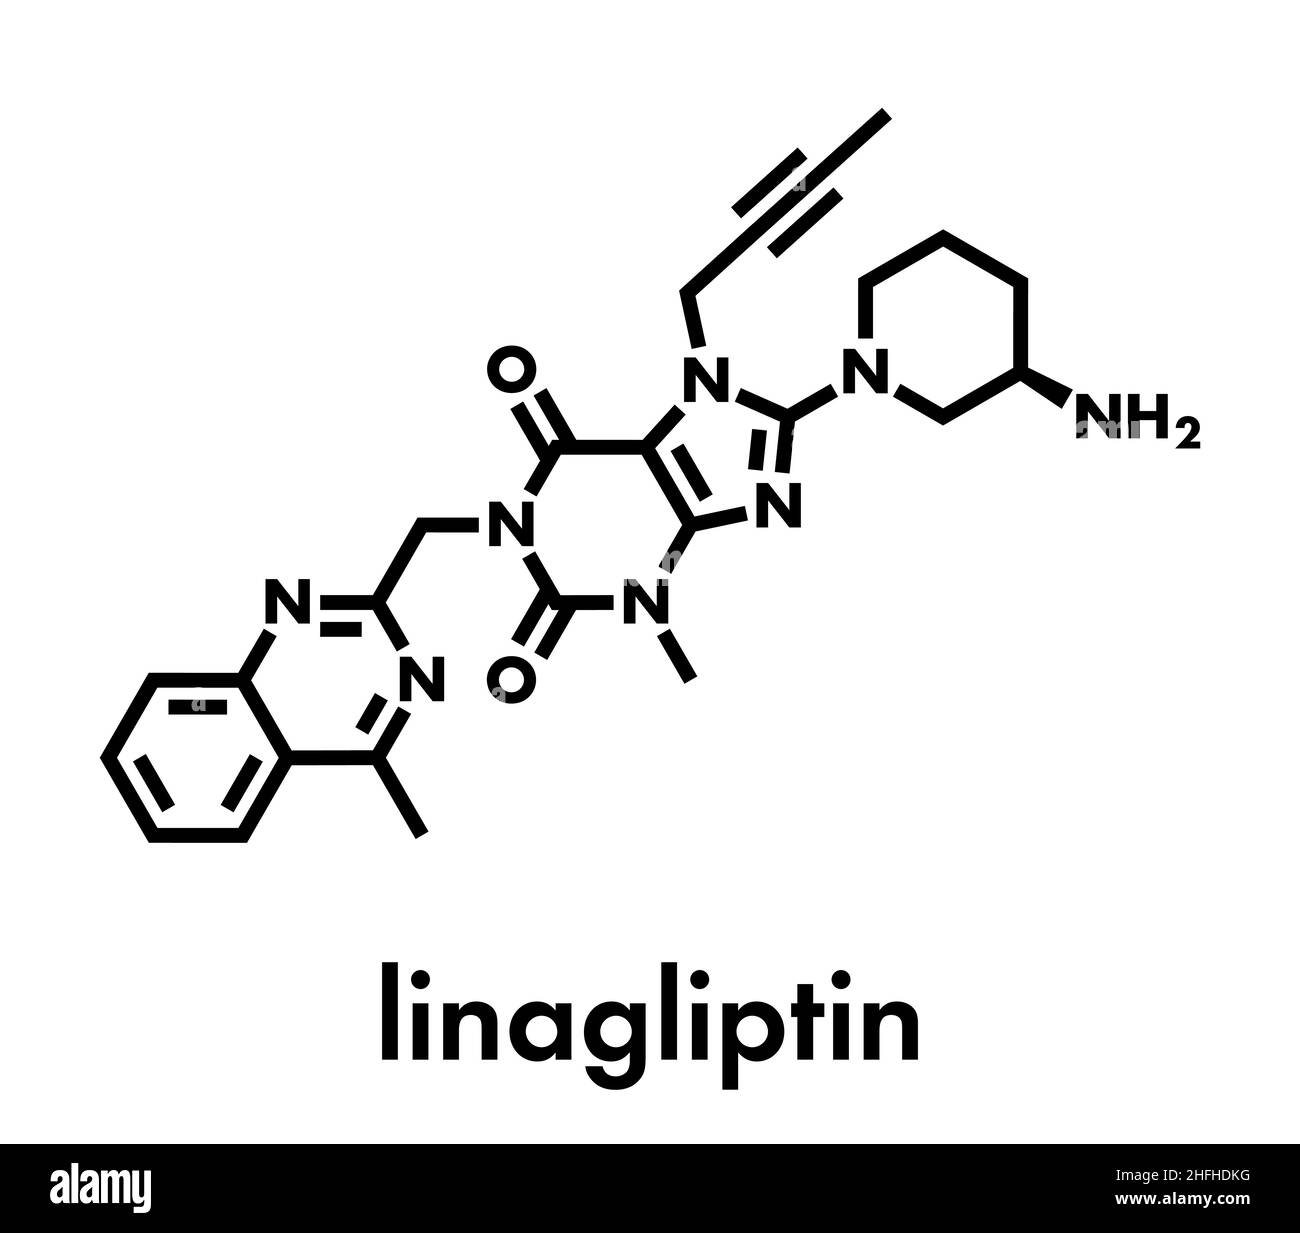 Linagliptin-Diabetes-Wirkstoffmolekül (Dipeptidyl-Peptidase 4 oder DPP4-Hemmer). Skelettformel. Stock Vektor